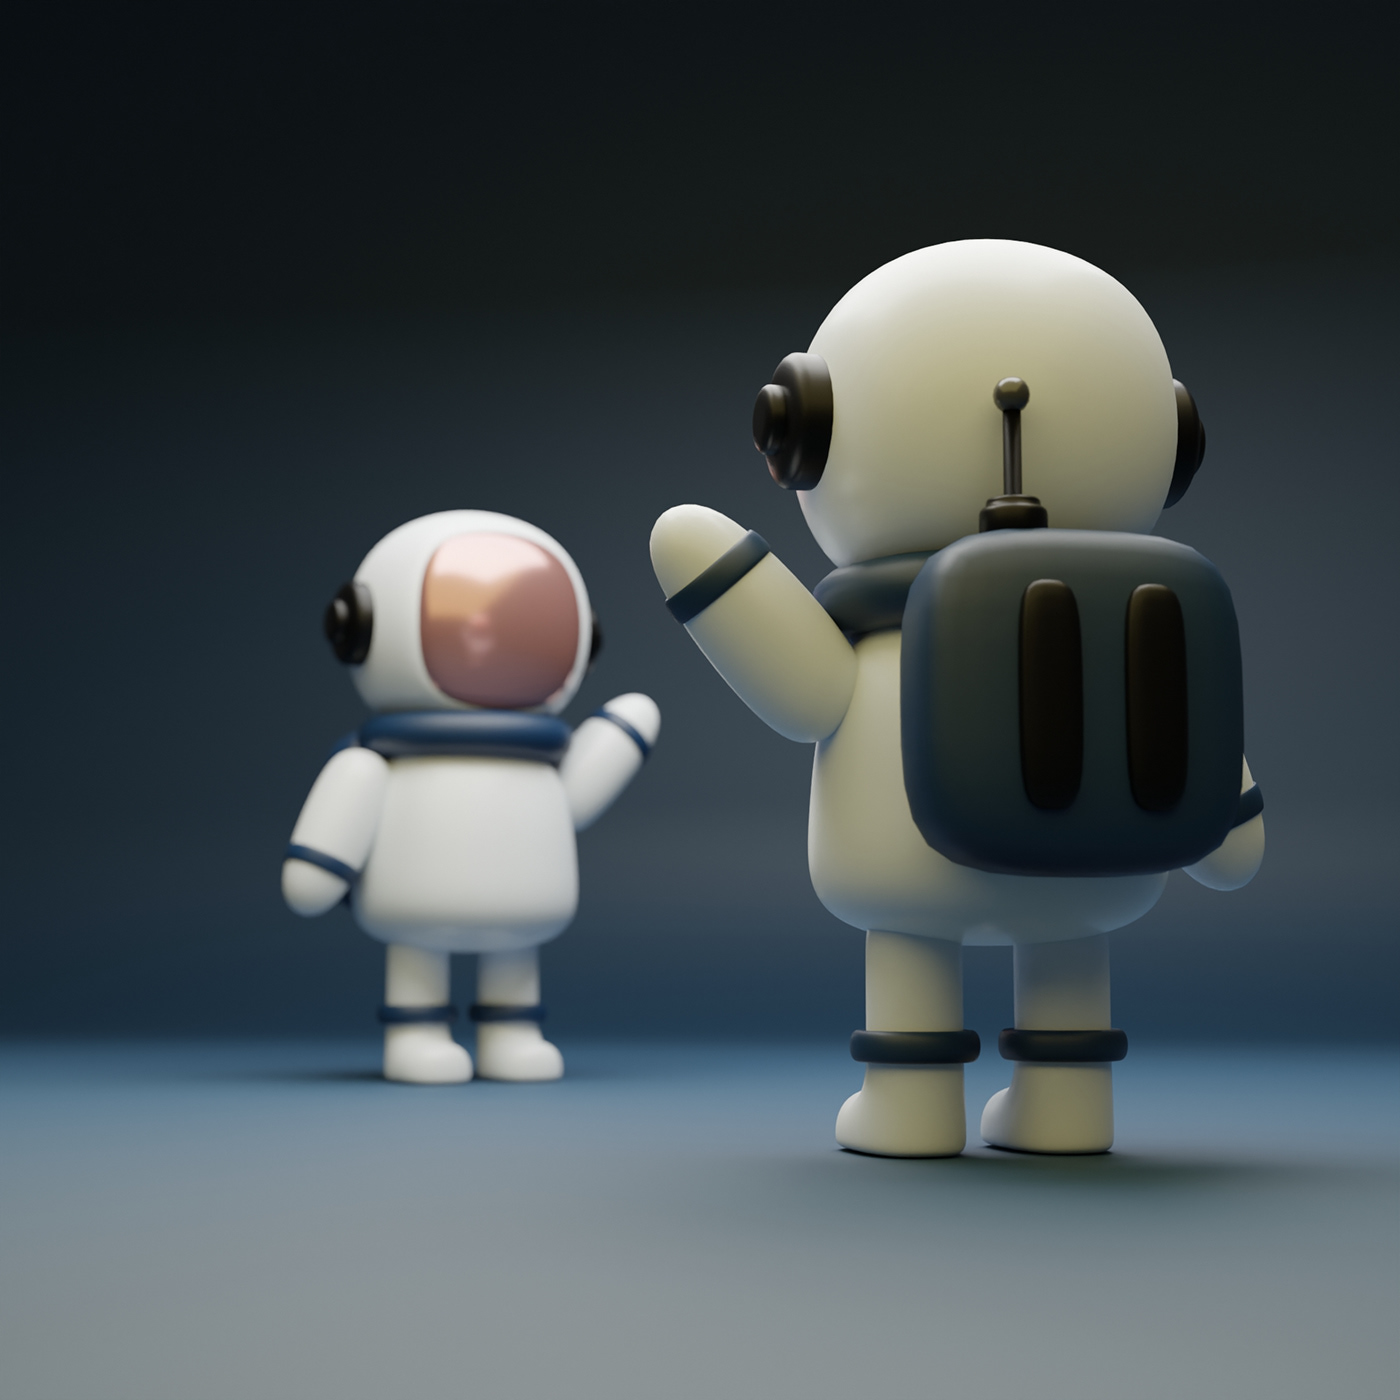 3D 3DDesign astronaut blender Character chibi modeling Render